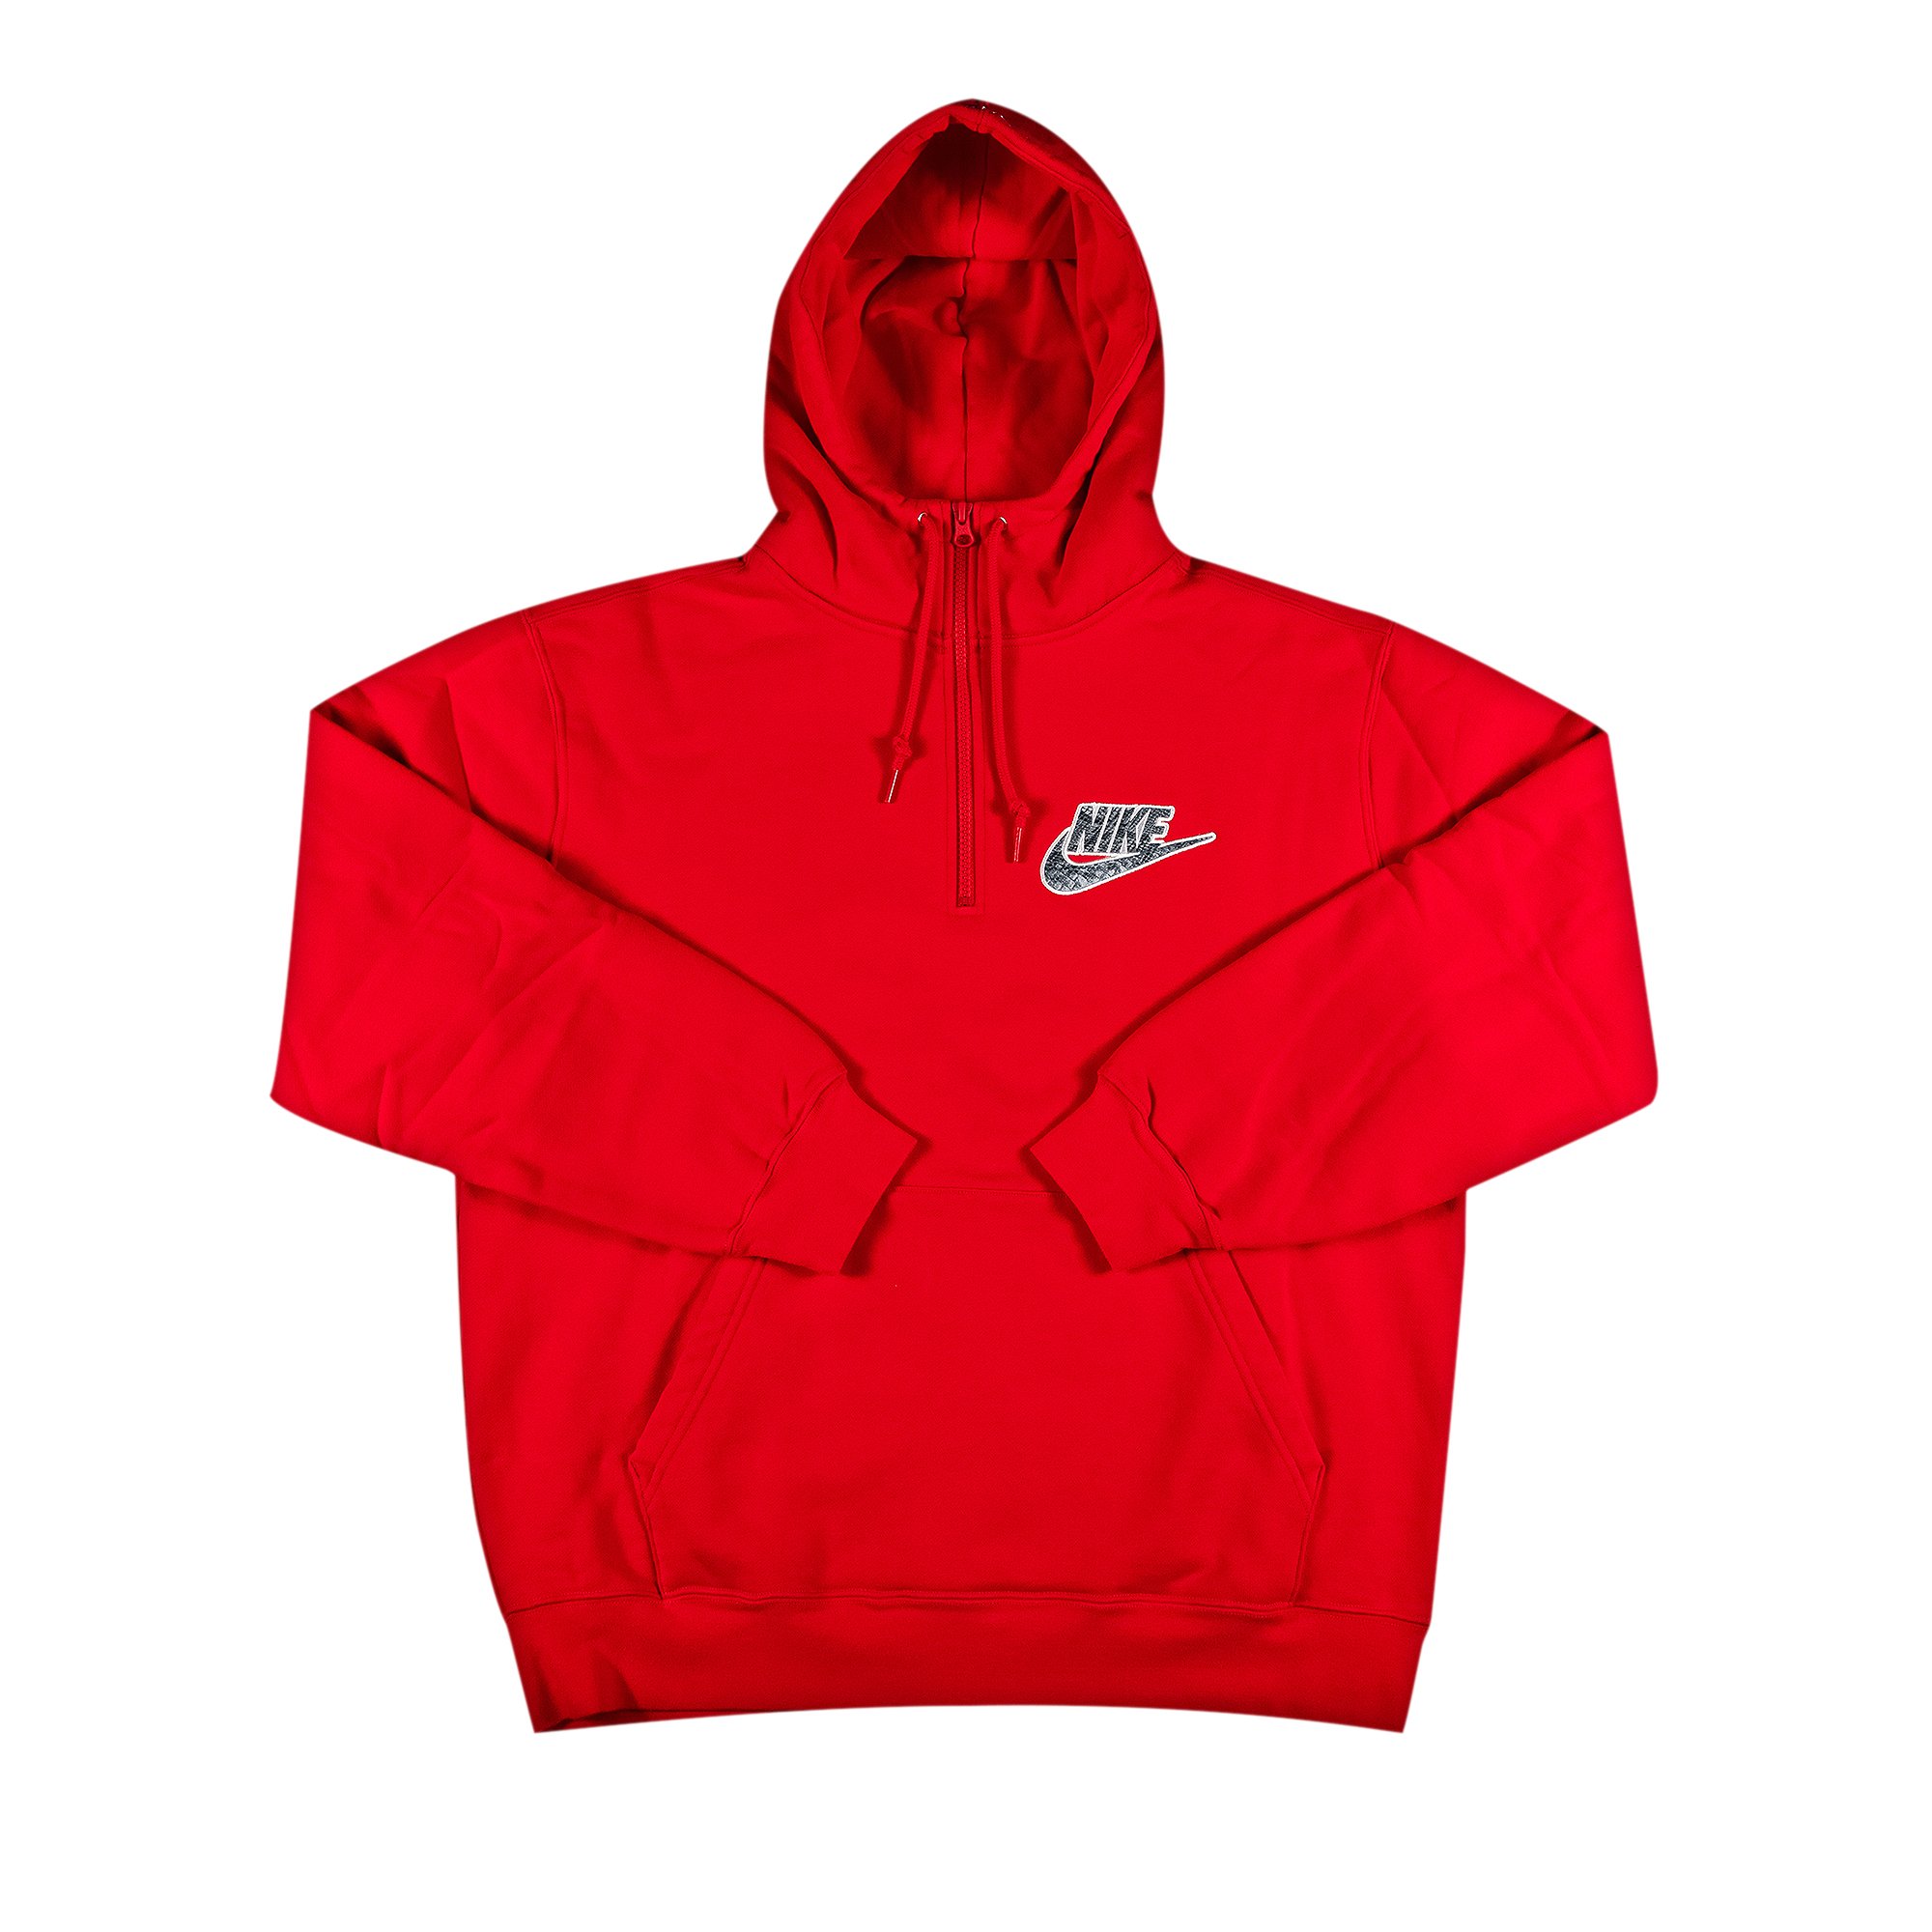 Buy Supreme x Nike Half Zip Hooded Sweatshirt 'Red' - SS21SW6 RED ...